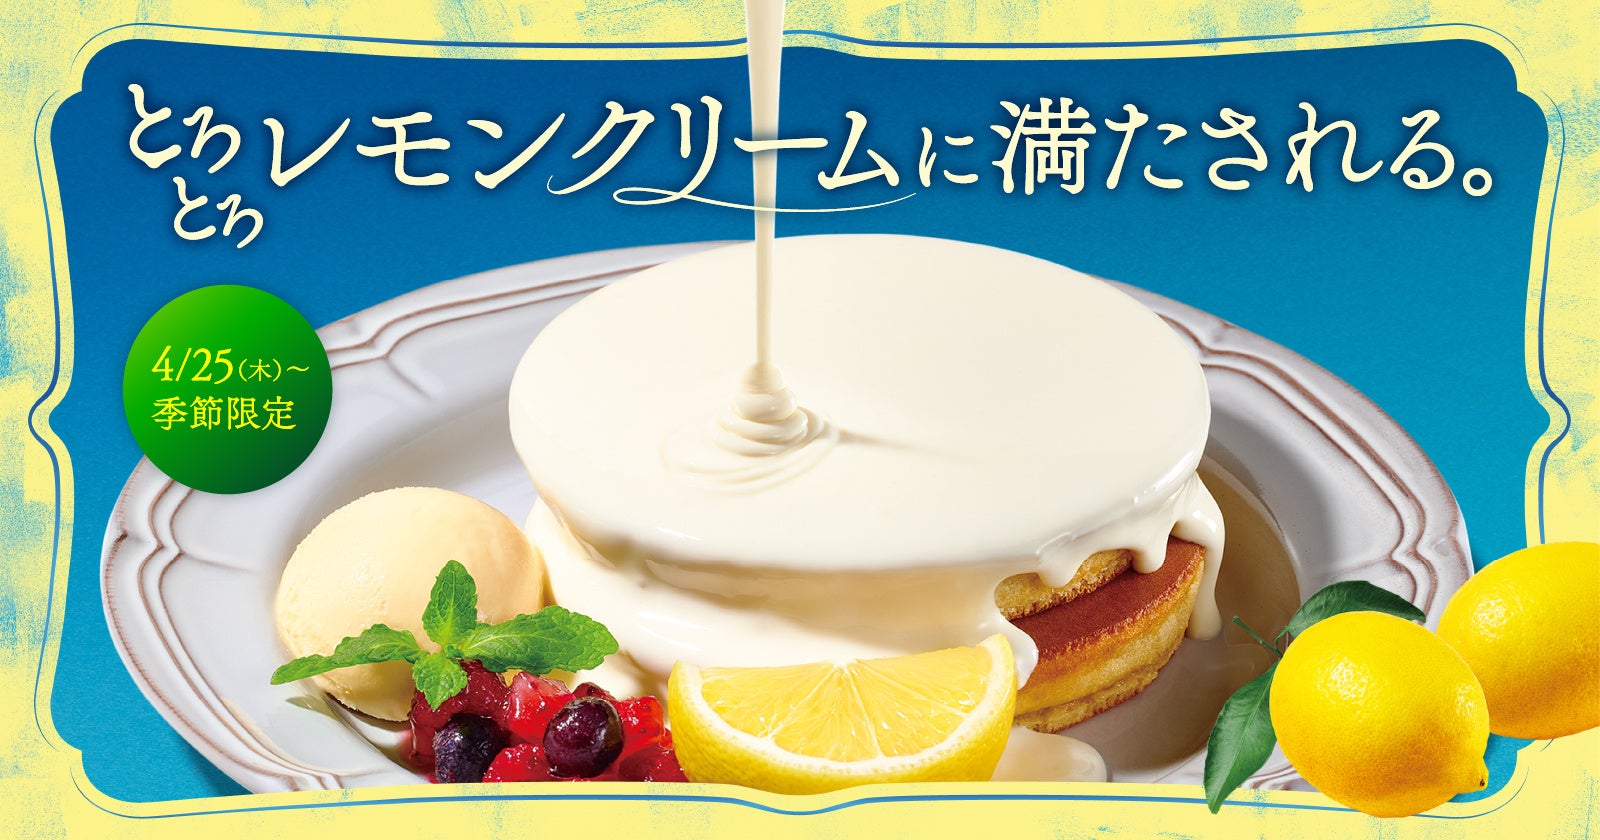 『珈琲館』と『珈琲館 蔵』で、 とろとろレモンクリームに満たされる期間限定ホットケーキが4月25日より新登場!